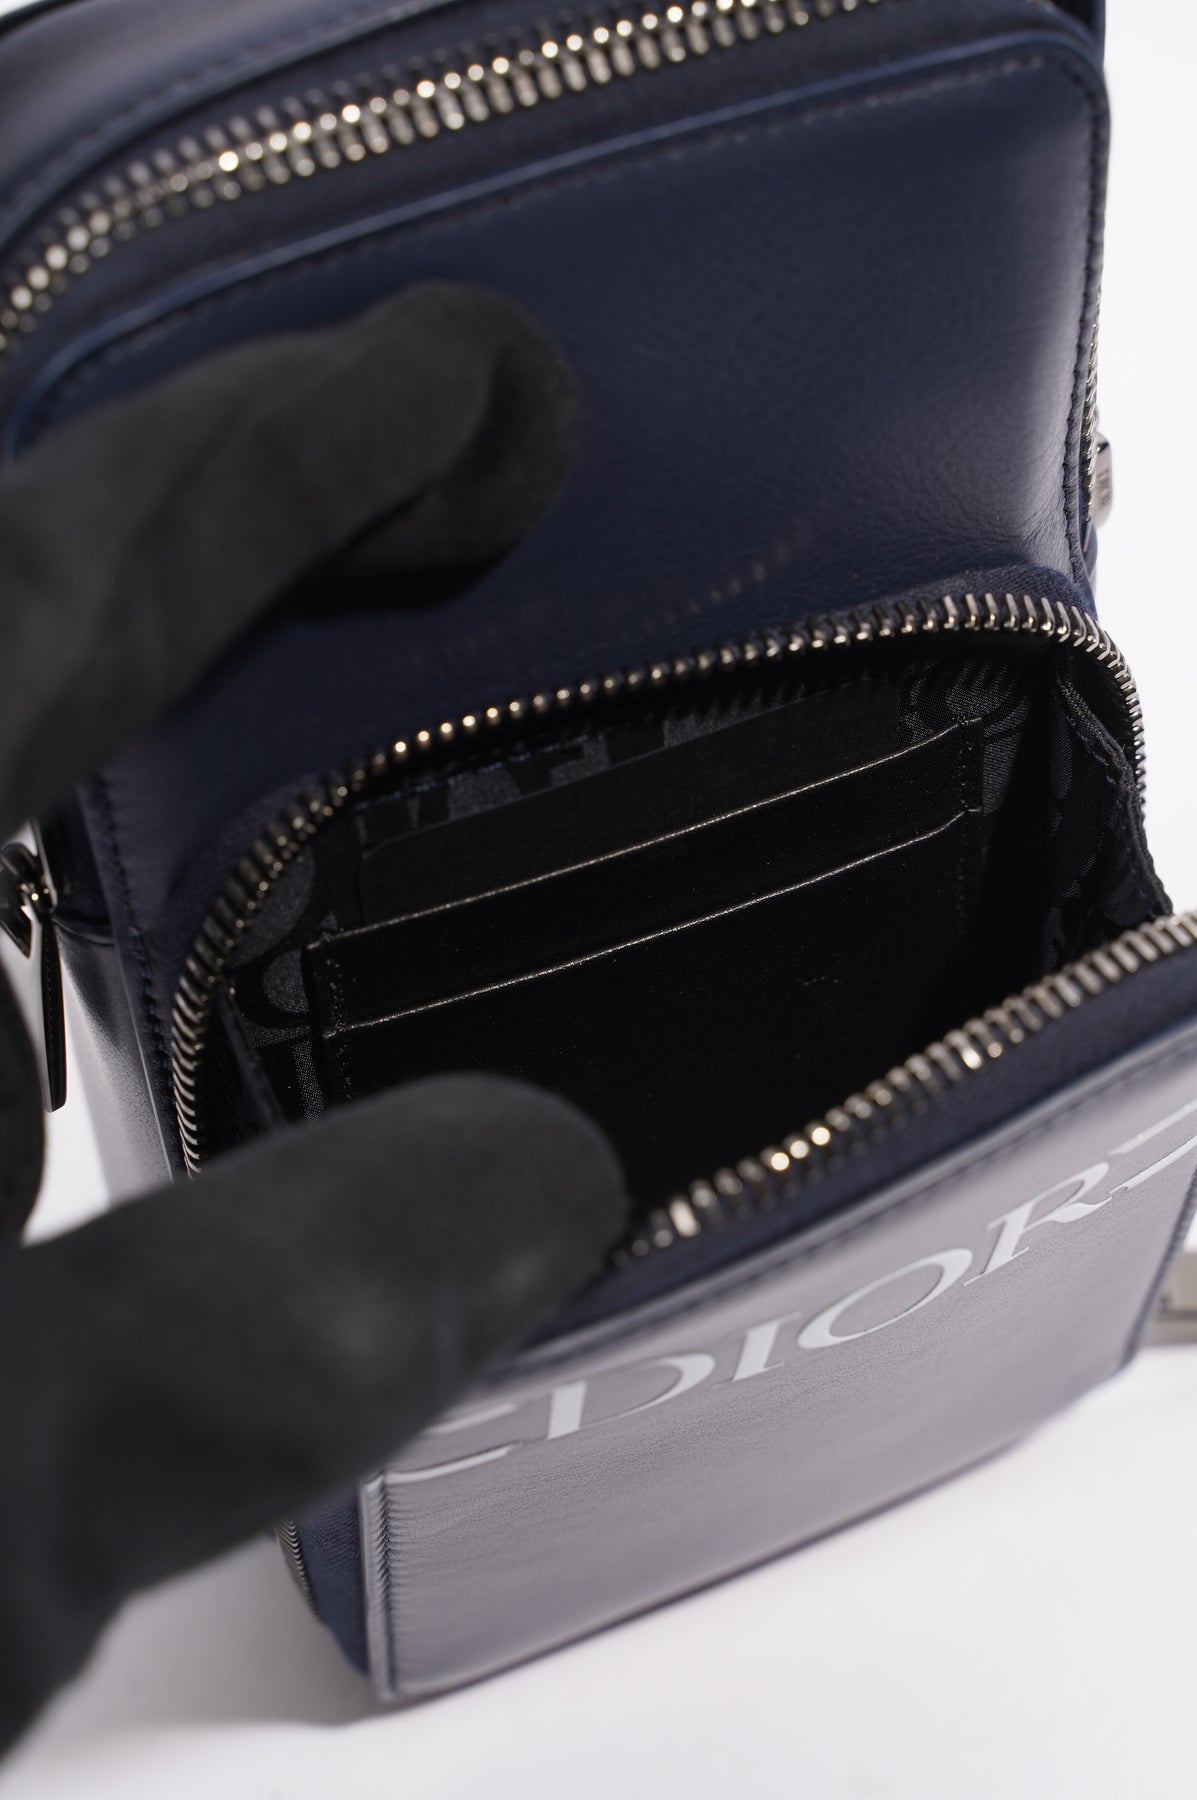 Dior Men's Vertical Wallet